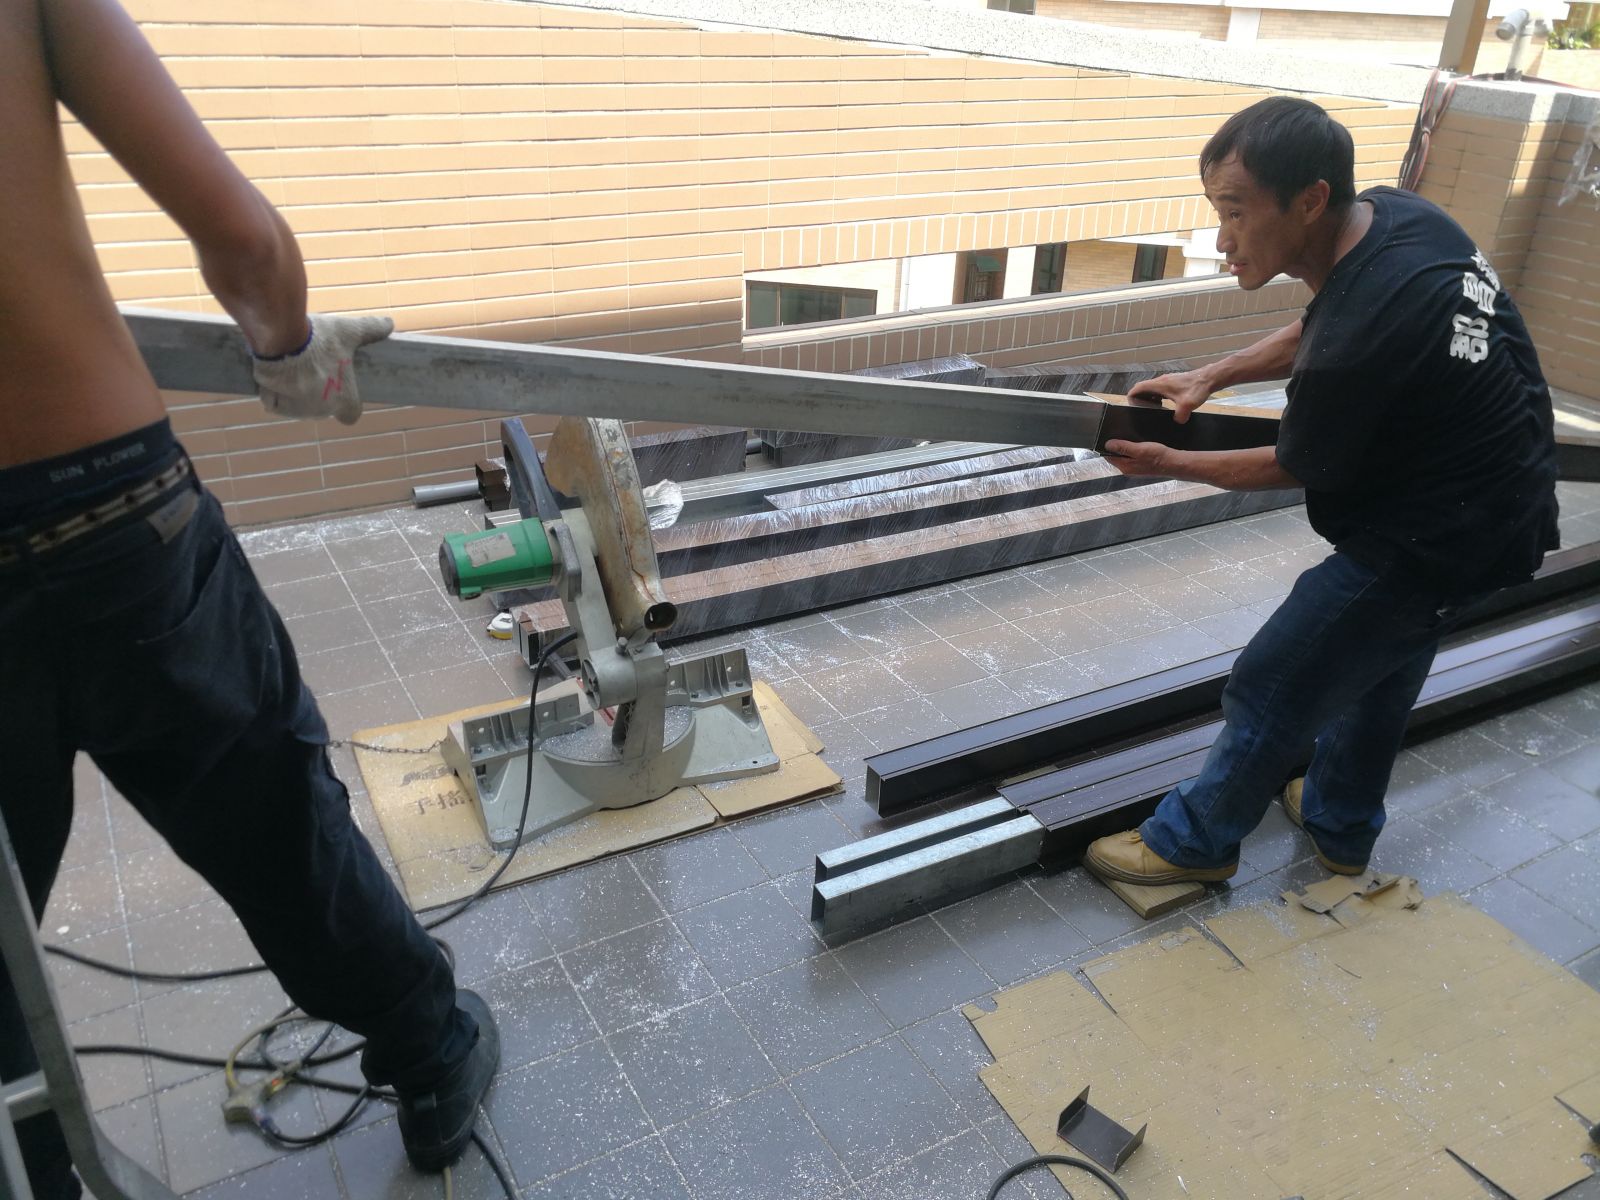 屋頂材料採用雙材質鋁+鋼管